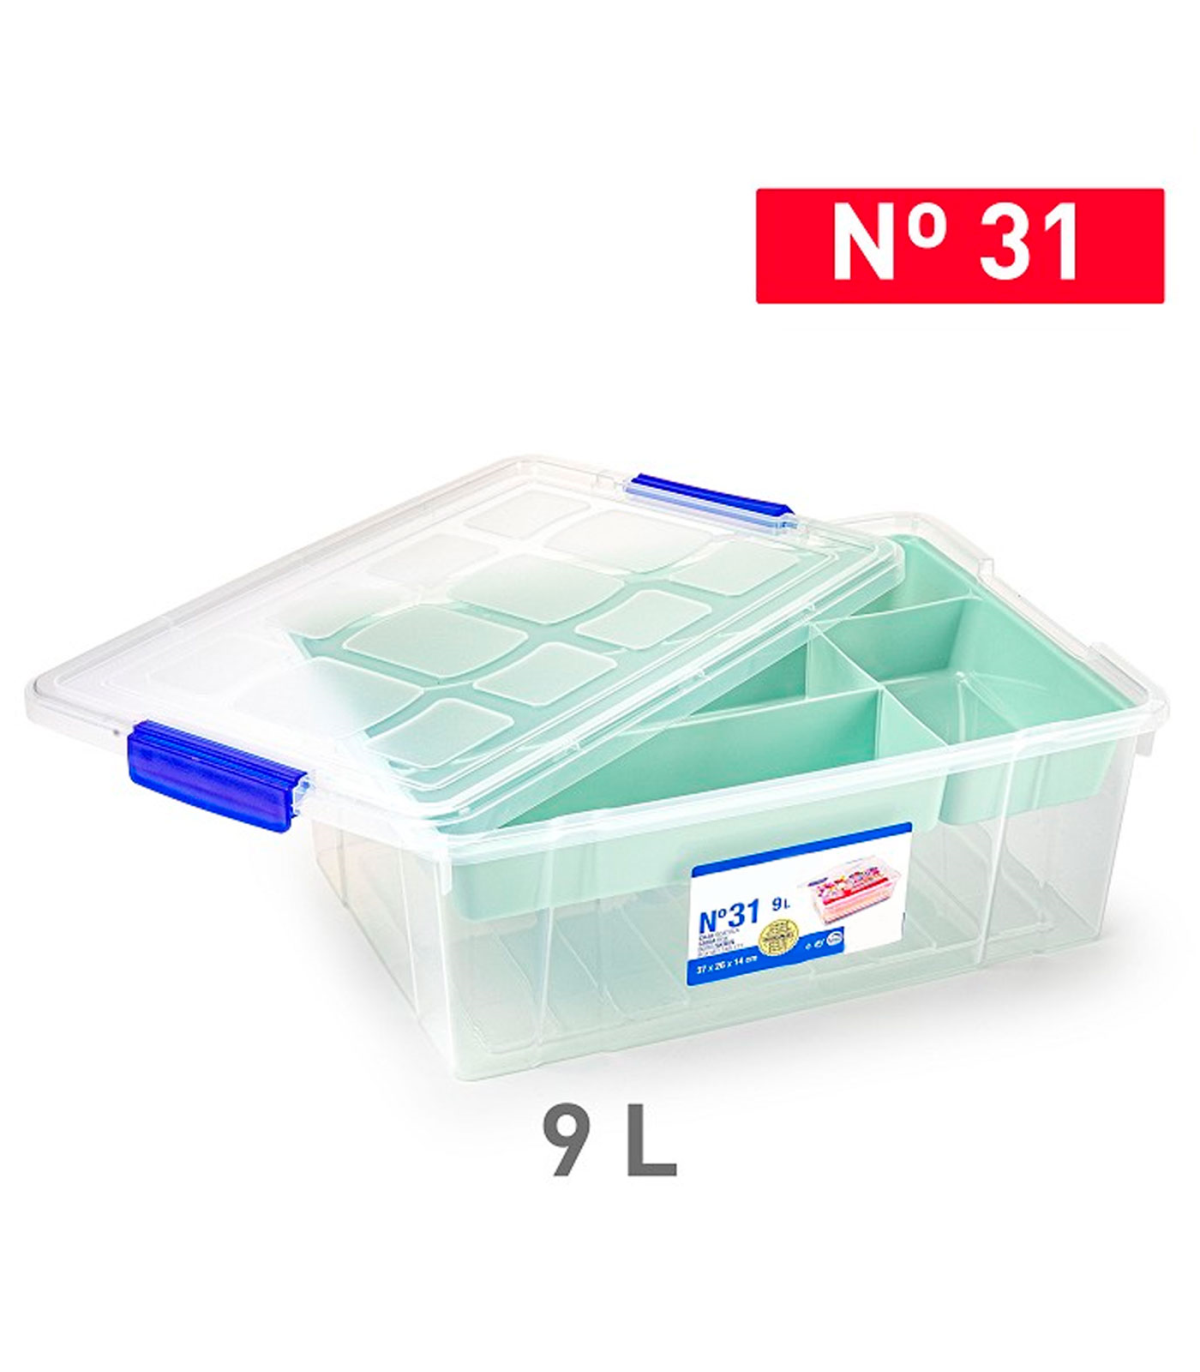 Tradineur - Caja de plástico con tapa y bandeja Nº31, transparente, cajón  de almacenaje, ordenación, almacenamiento objetos, 9 l